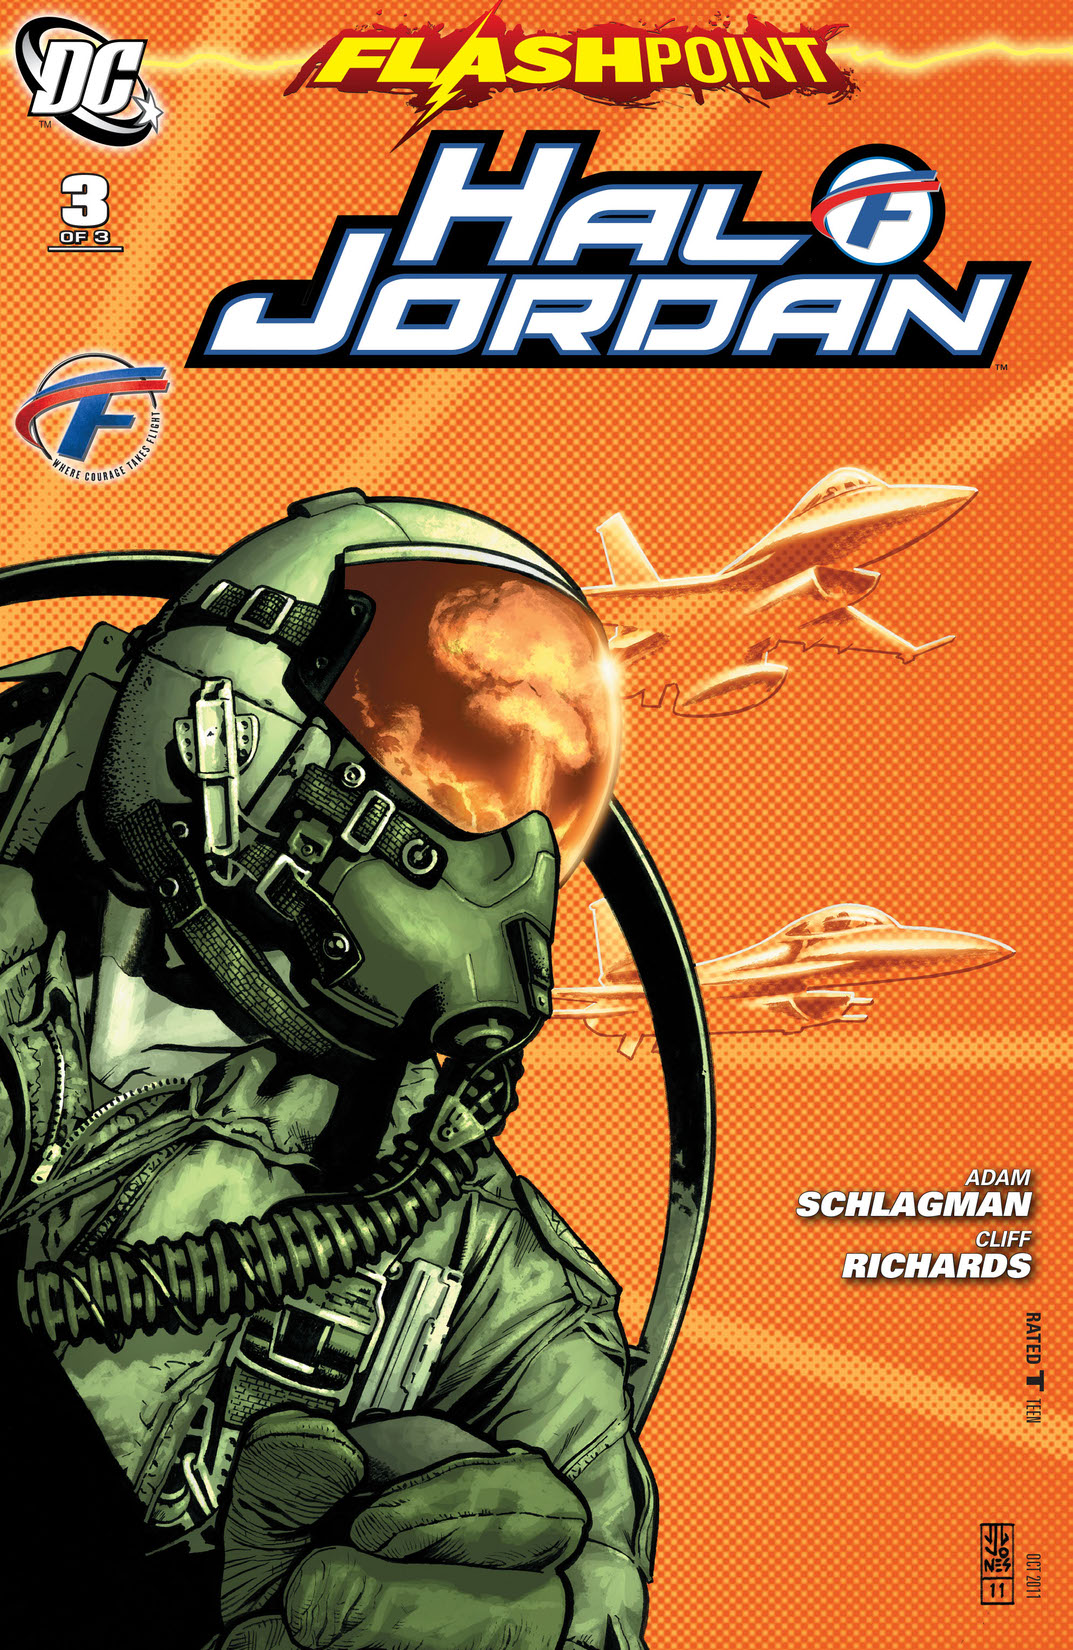 Flashpoint: Hal Jordan #3 preview images